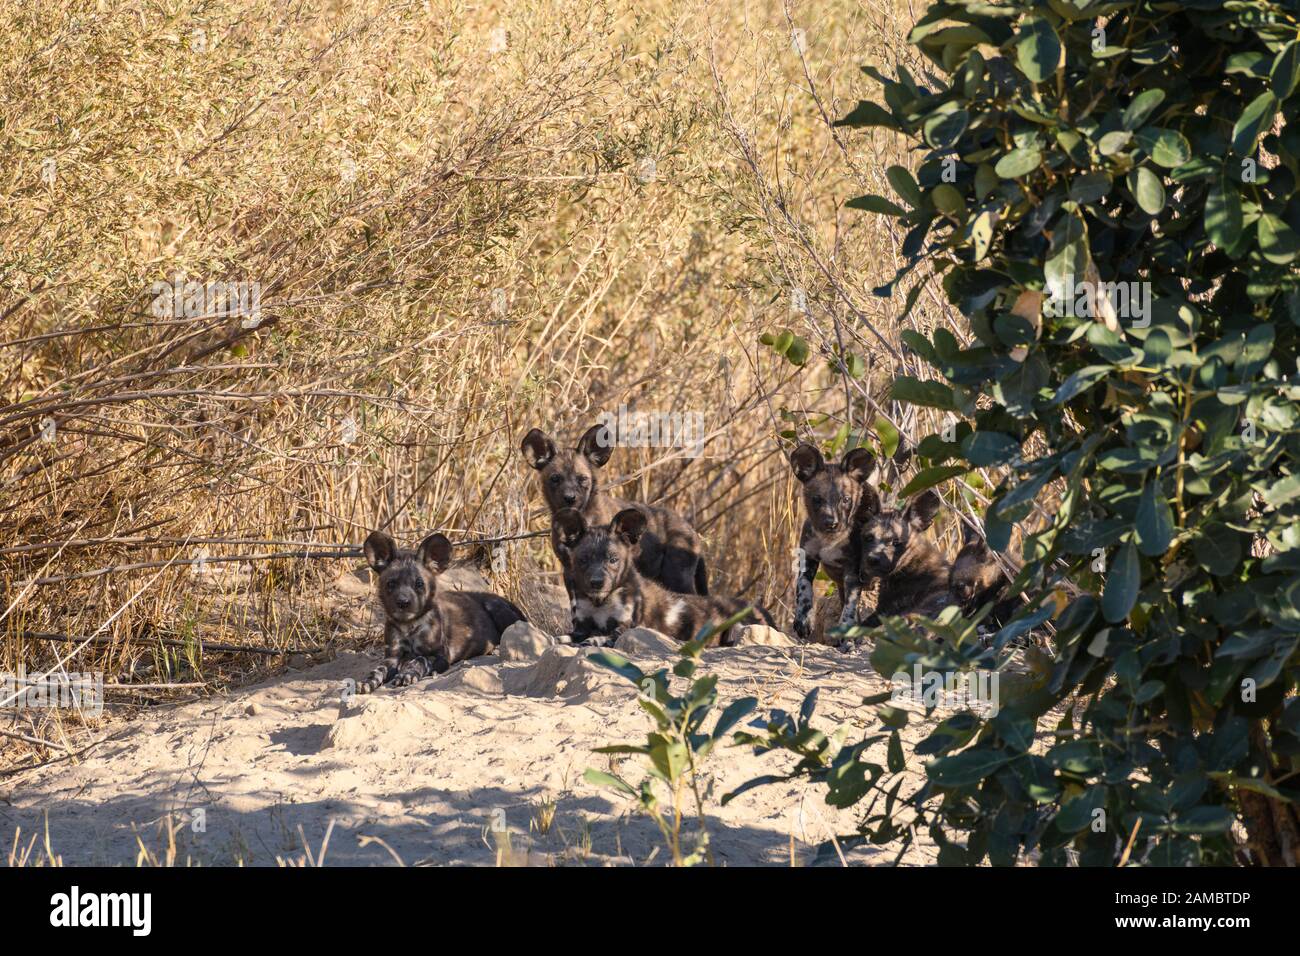 Chiots de chiens sauvages africains à leur den, Lycaon pictus, Macatoo, Okavanago Delta, Botswana. Également connu sous le nom de loup Peint. Banque D'Images